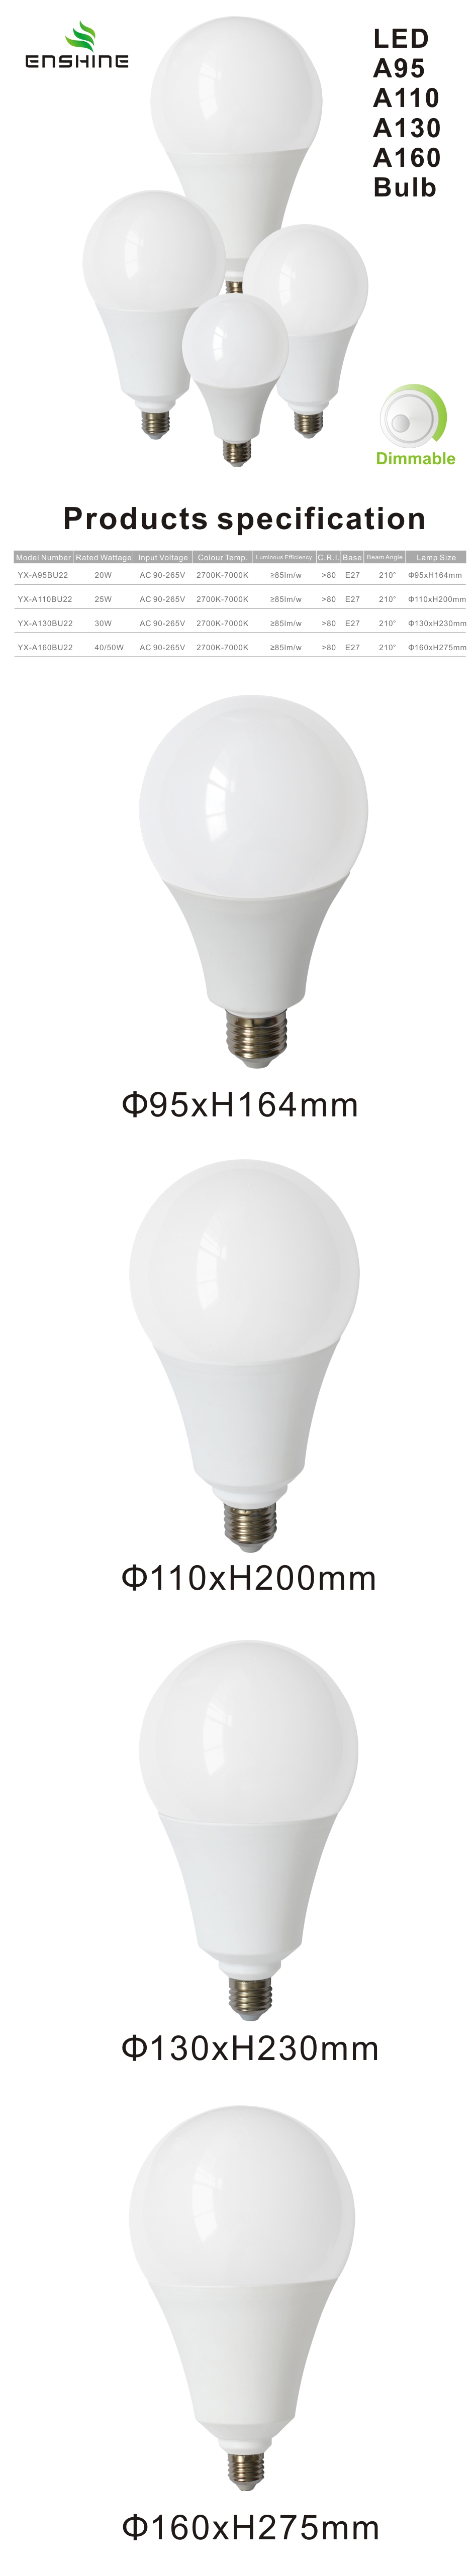 A95 dimmable led bulbs